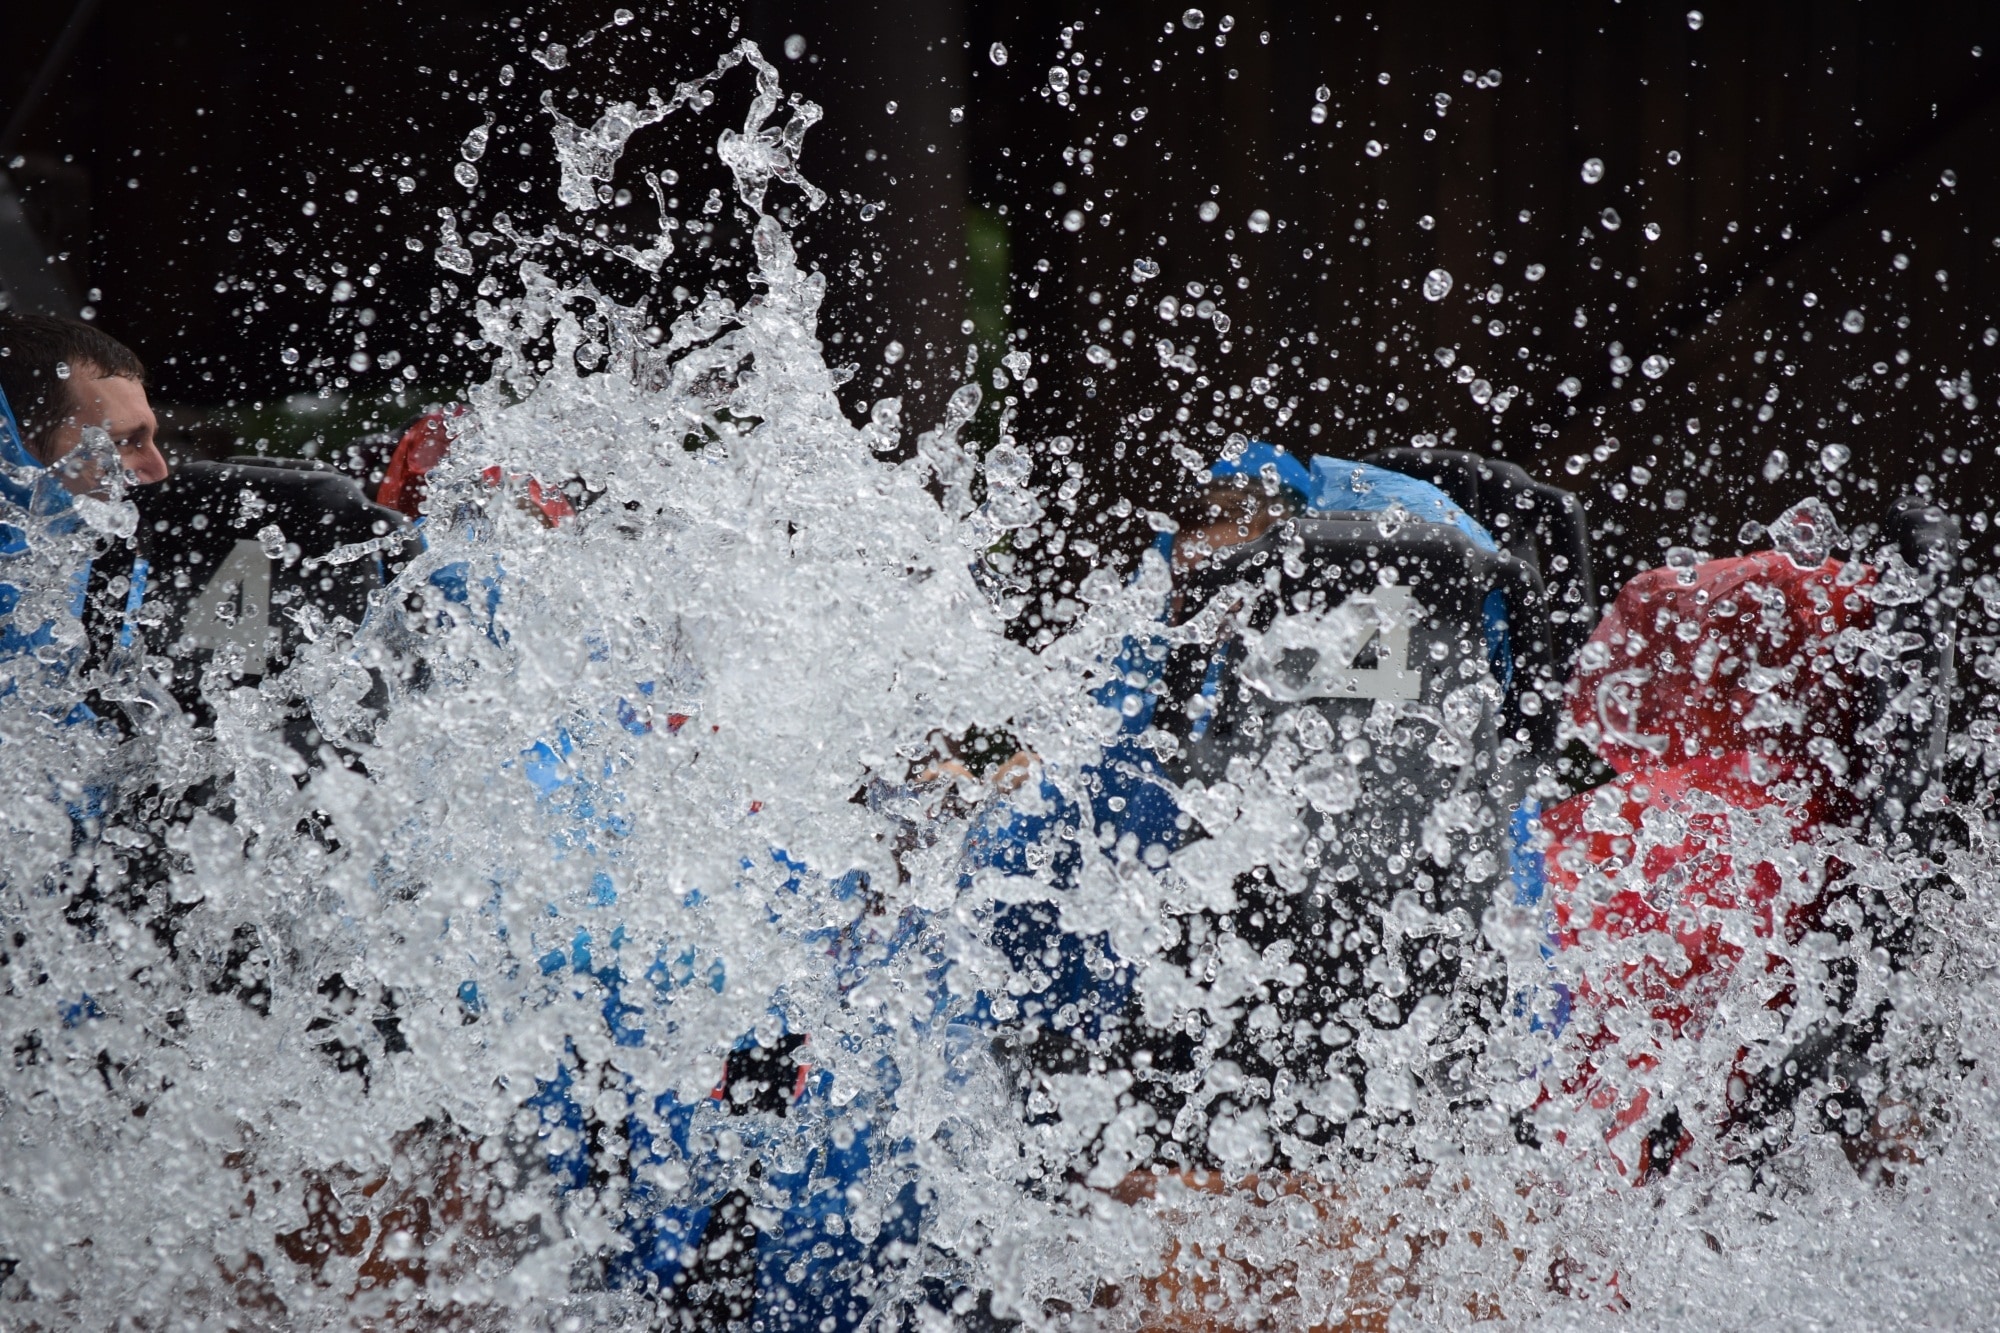 people splashing water timelapse photography